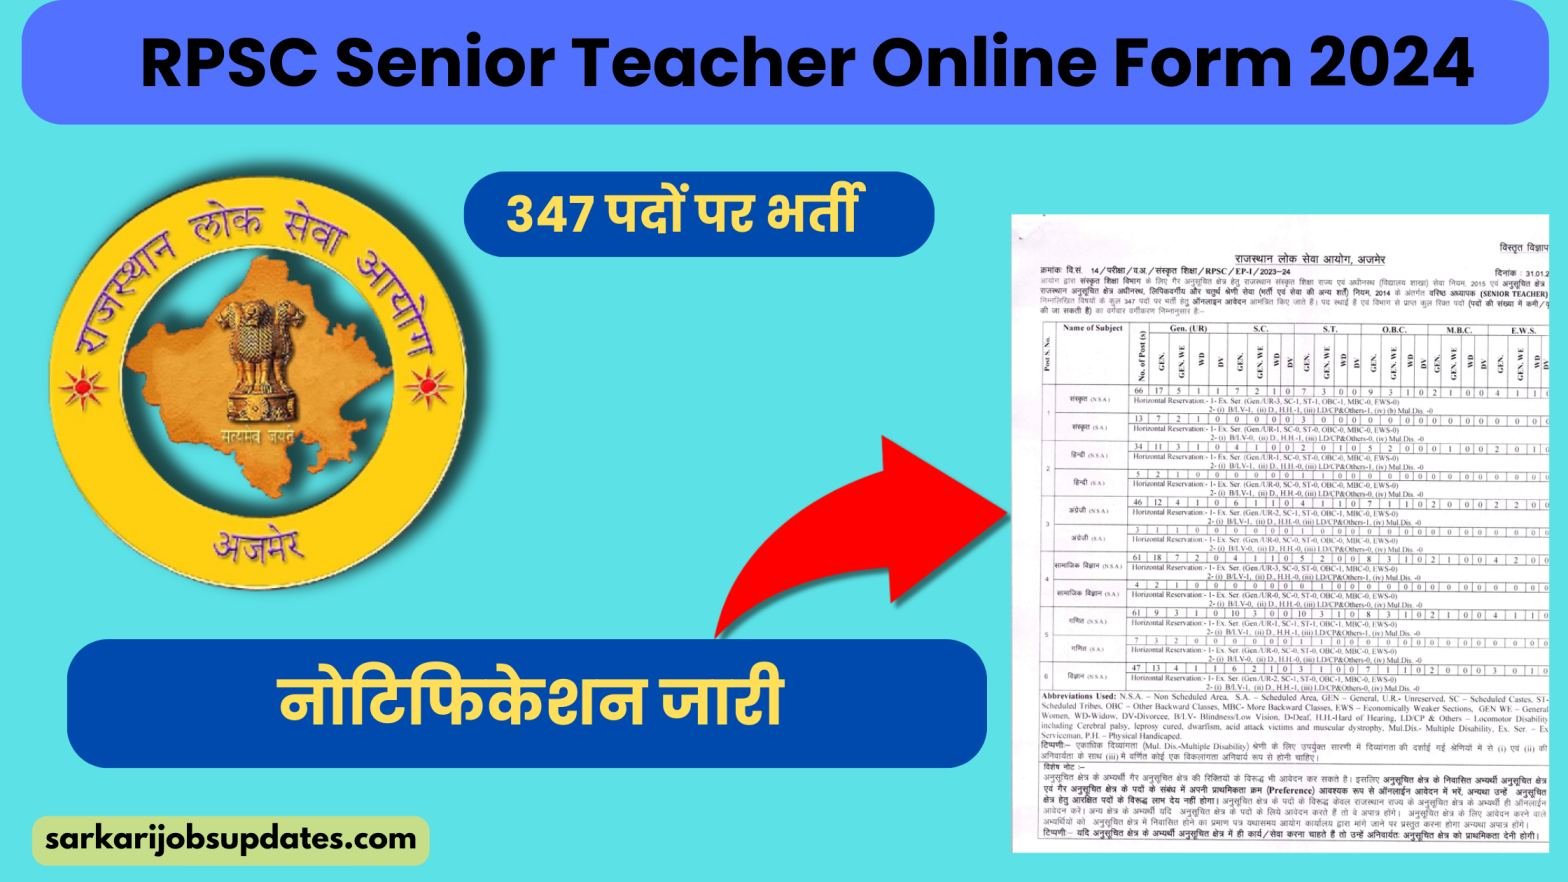 RPSC Senior Teacher Online Form 2024